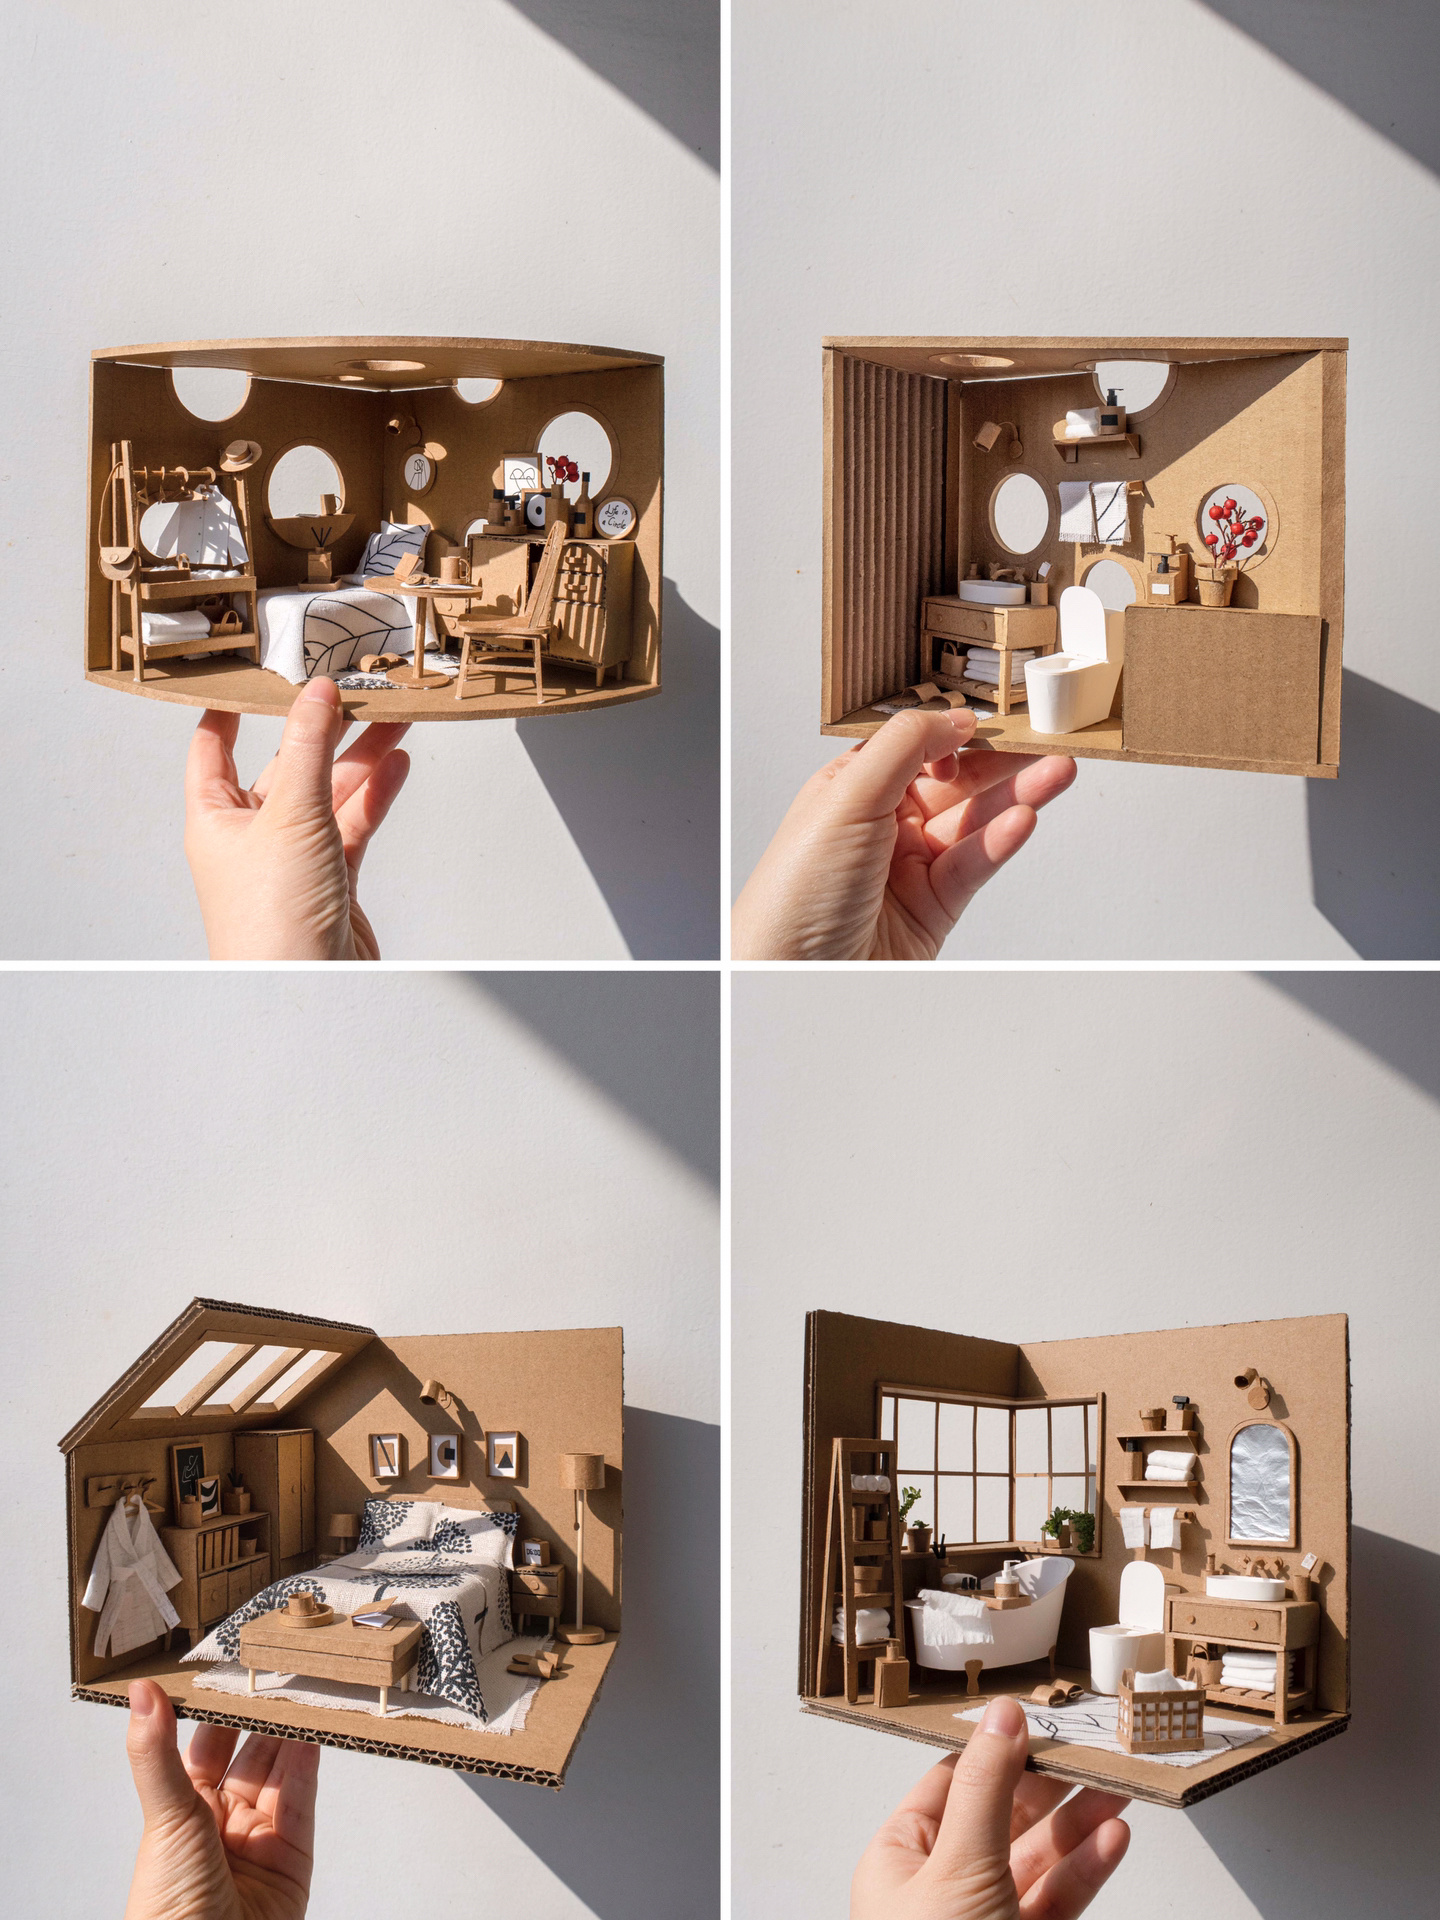 拿纸箱子做房子过程图片